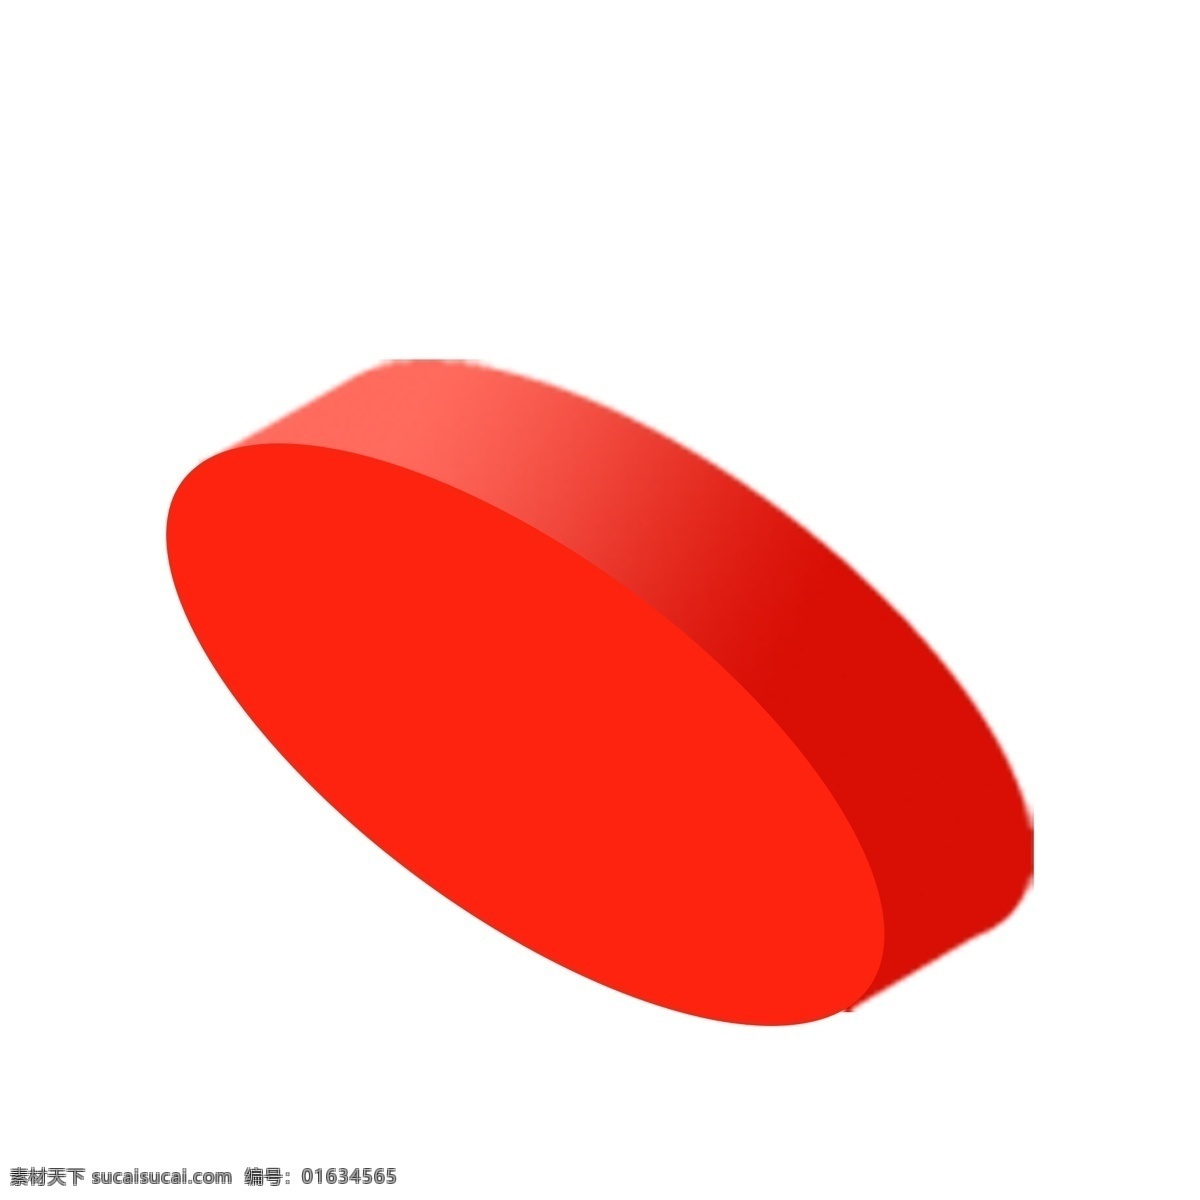 红色 立体 台面 免 抠 图 3d立体造型 卡通图案 卡通插画 红通通 舞台台面 红色立体台面 免抠图